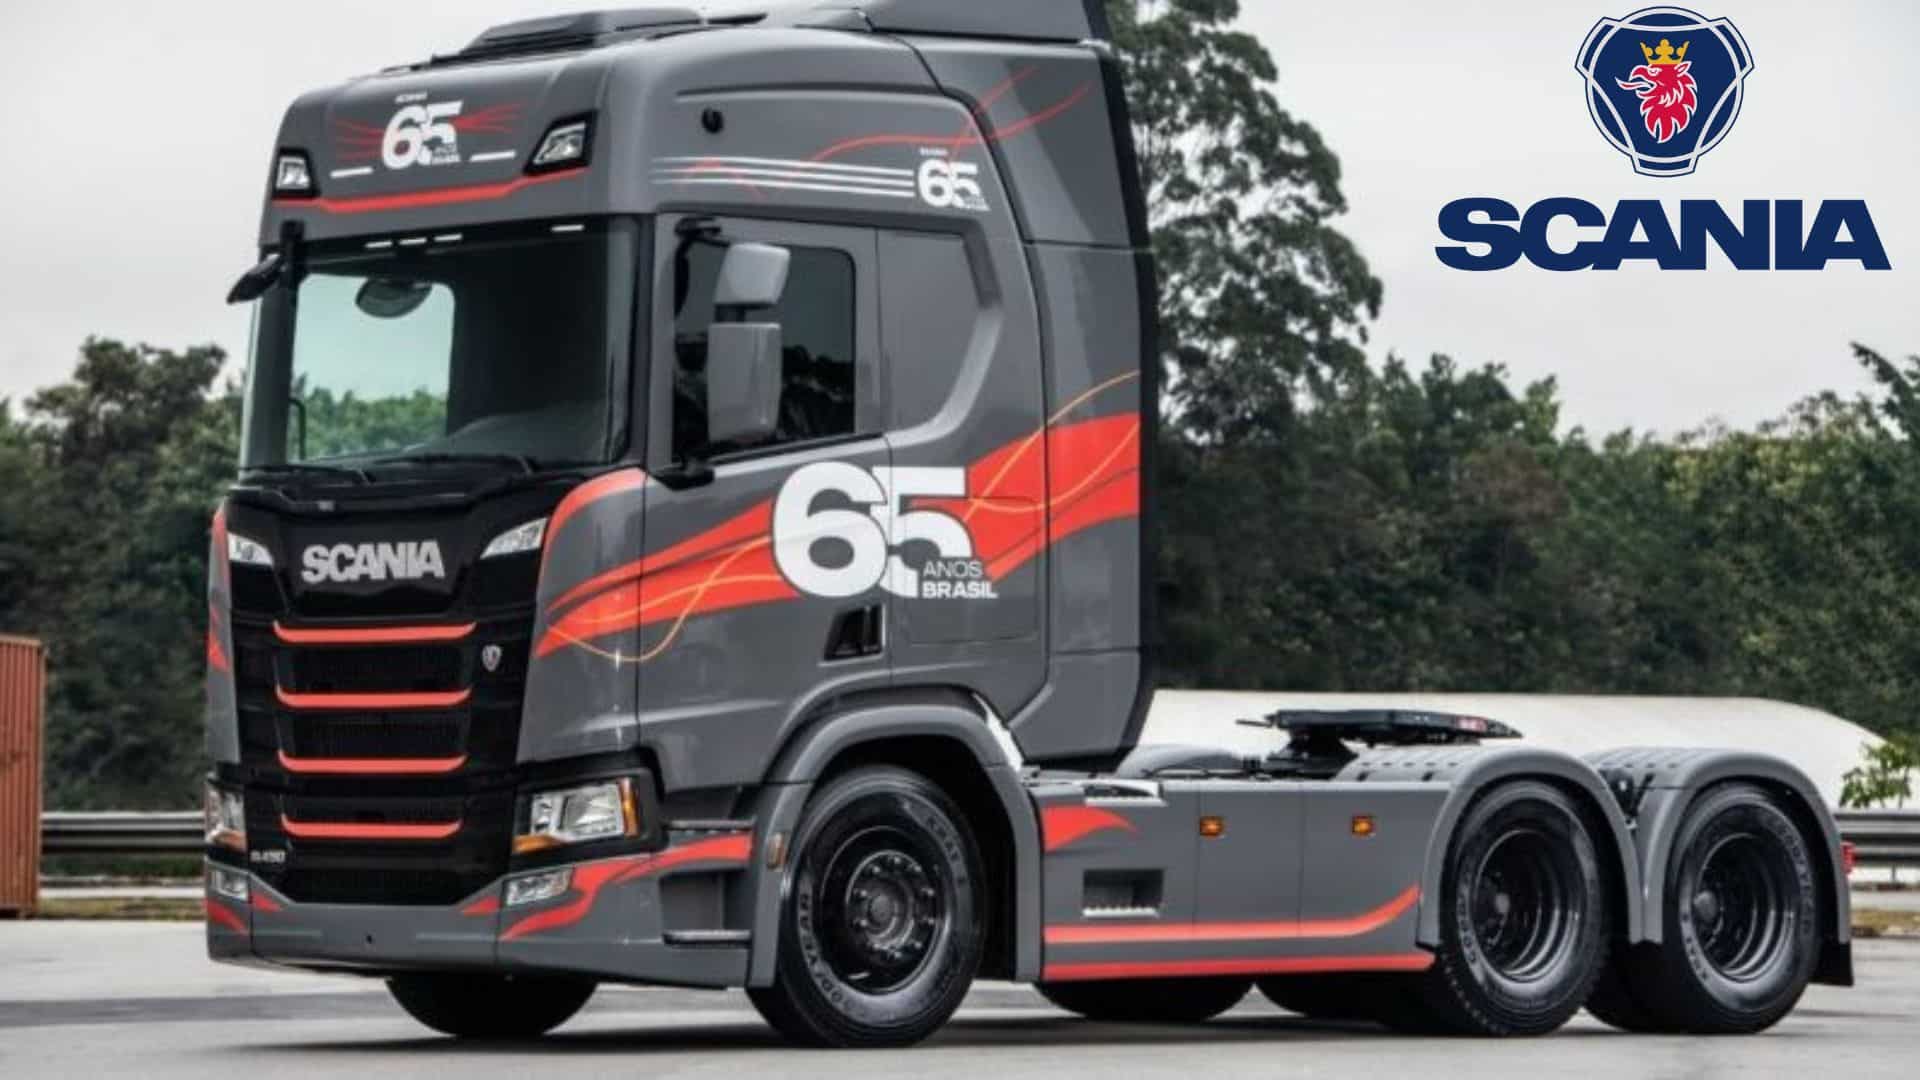 Scania 65 Anos